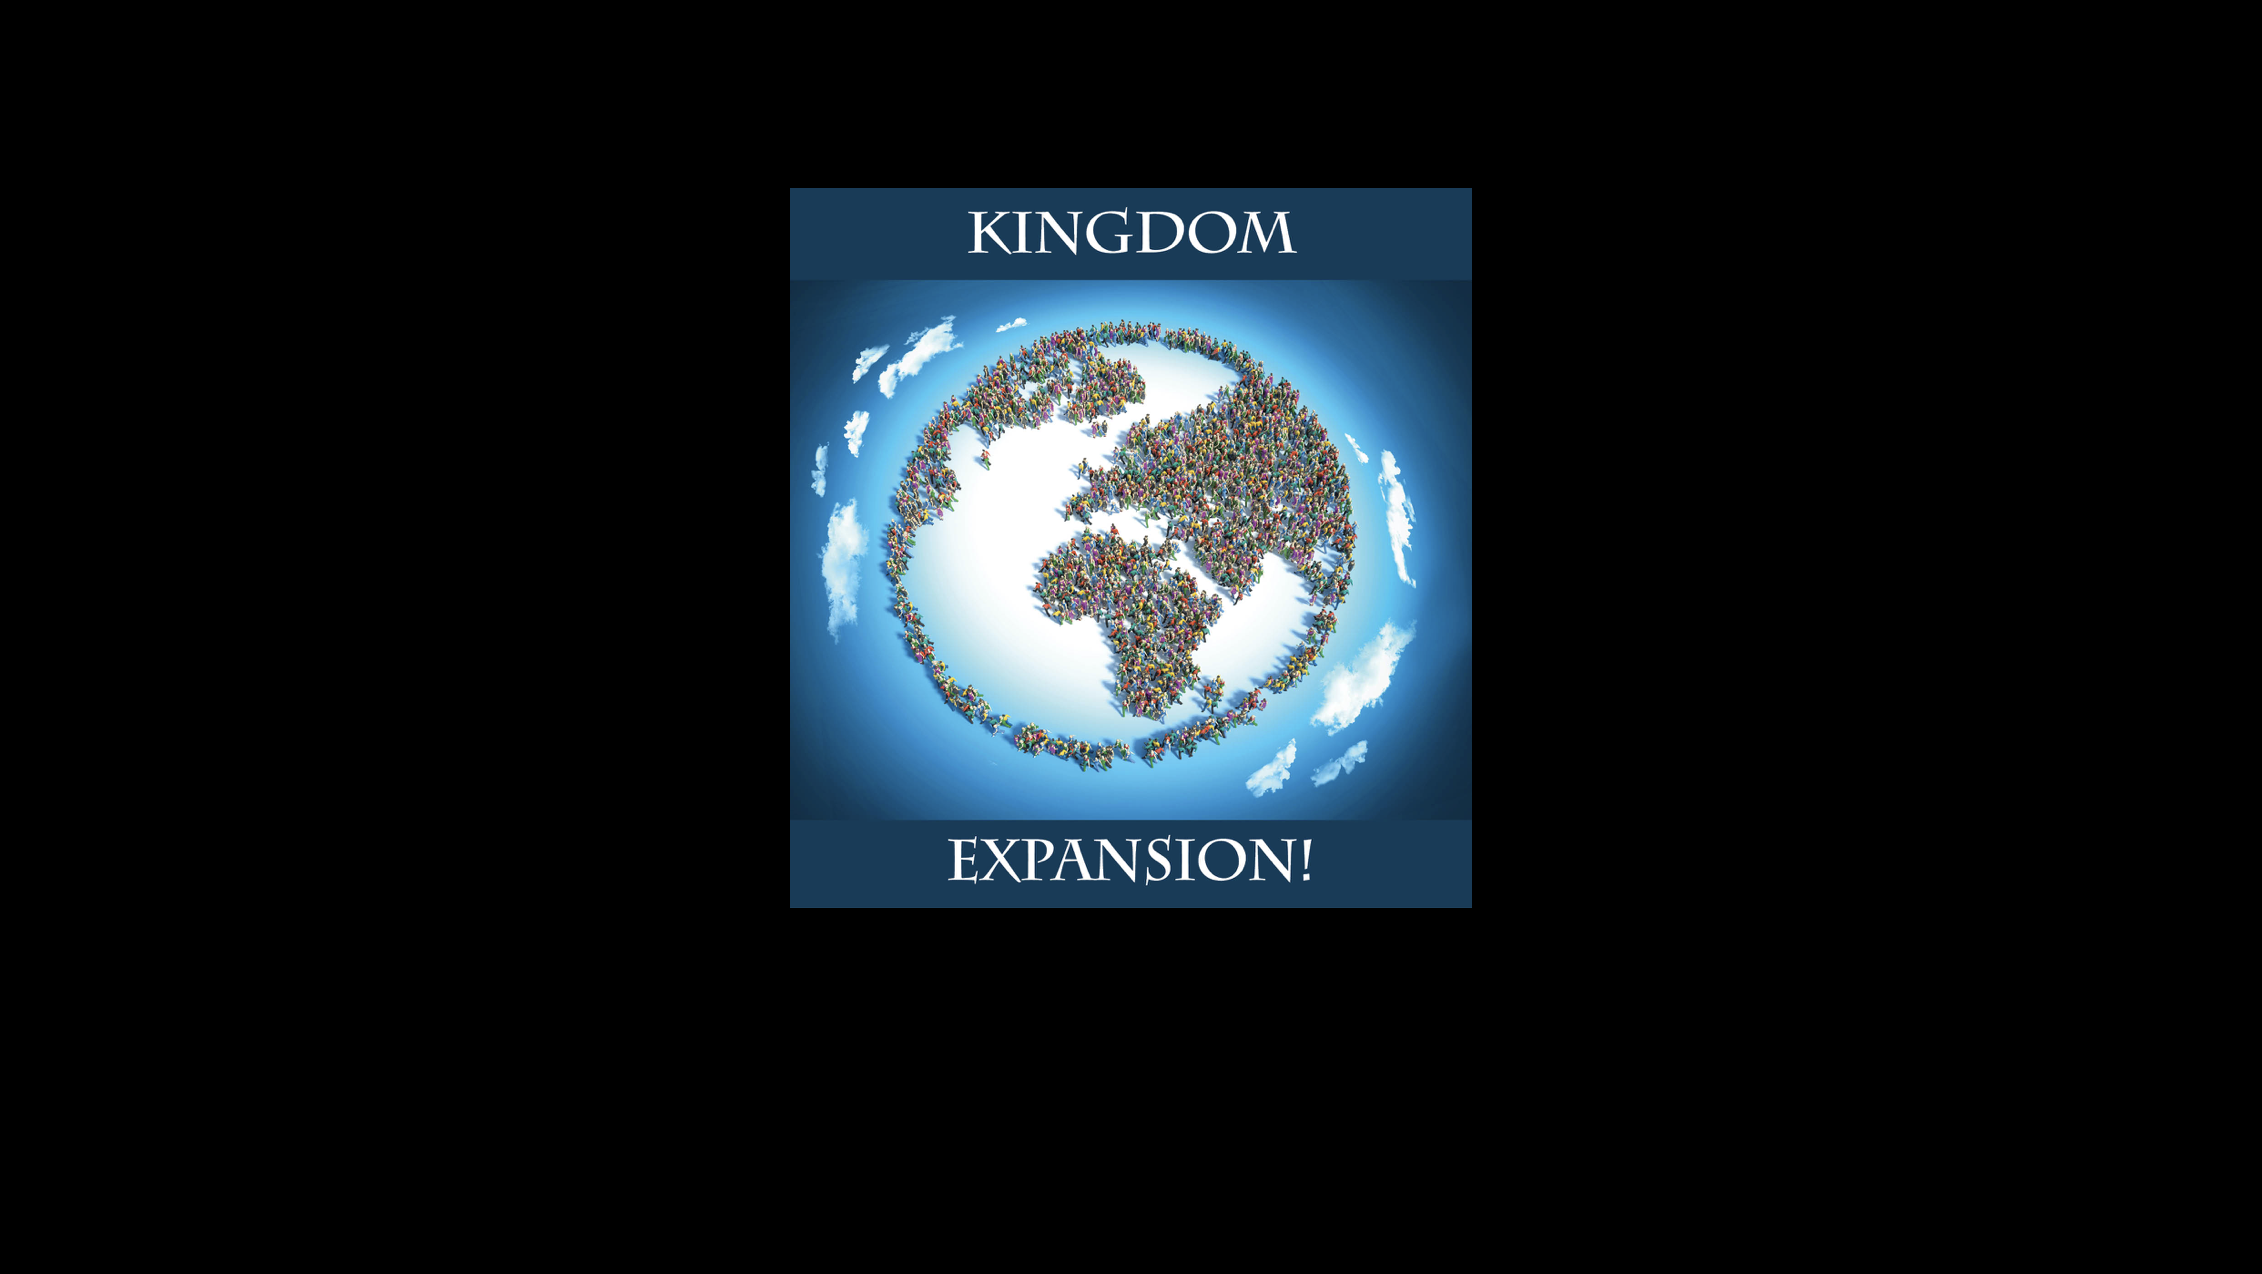 Kingdom Expansion! (Part 1) | John Black | 07-23-17